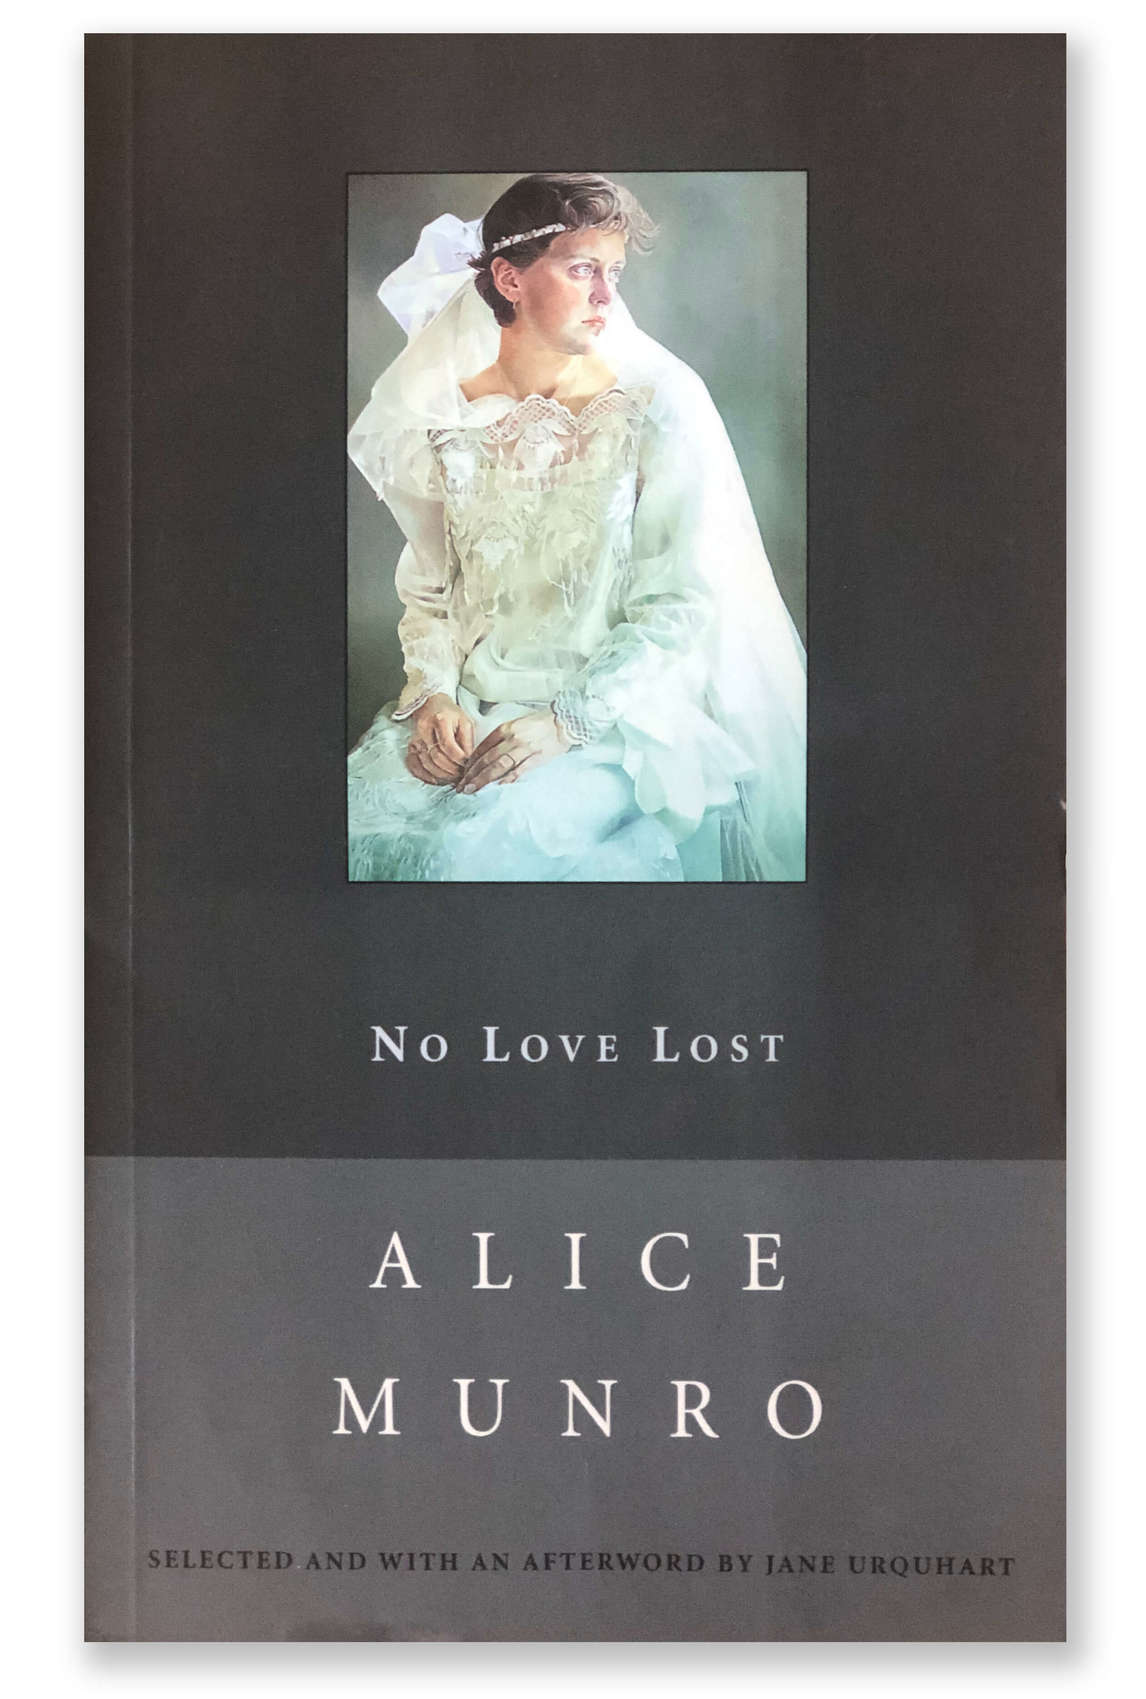 Couverture du recueil de nouvelles d’Alice Munro, No Love Lost, 2003